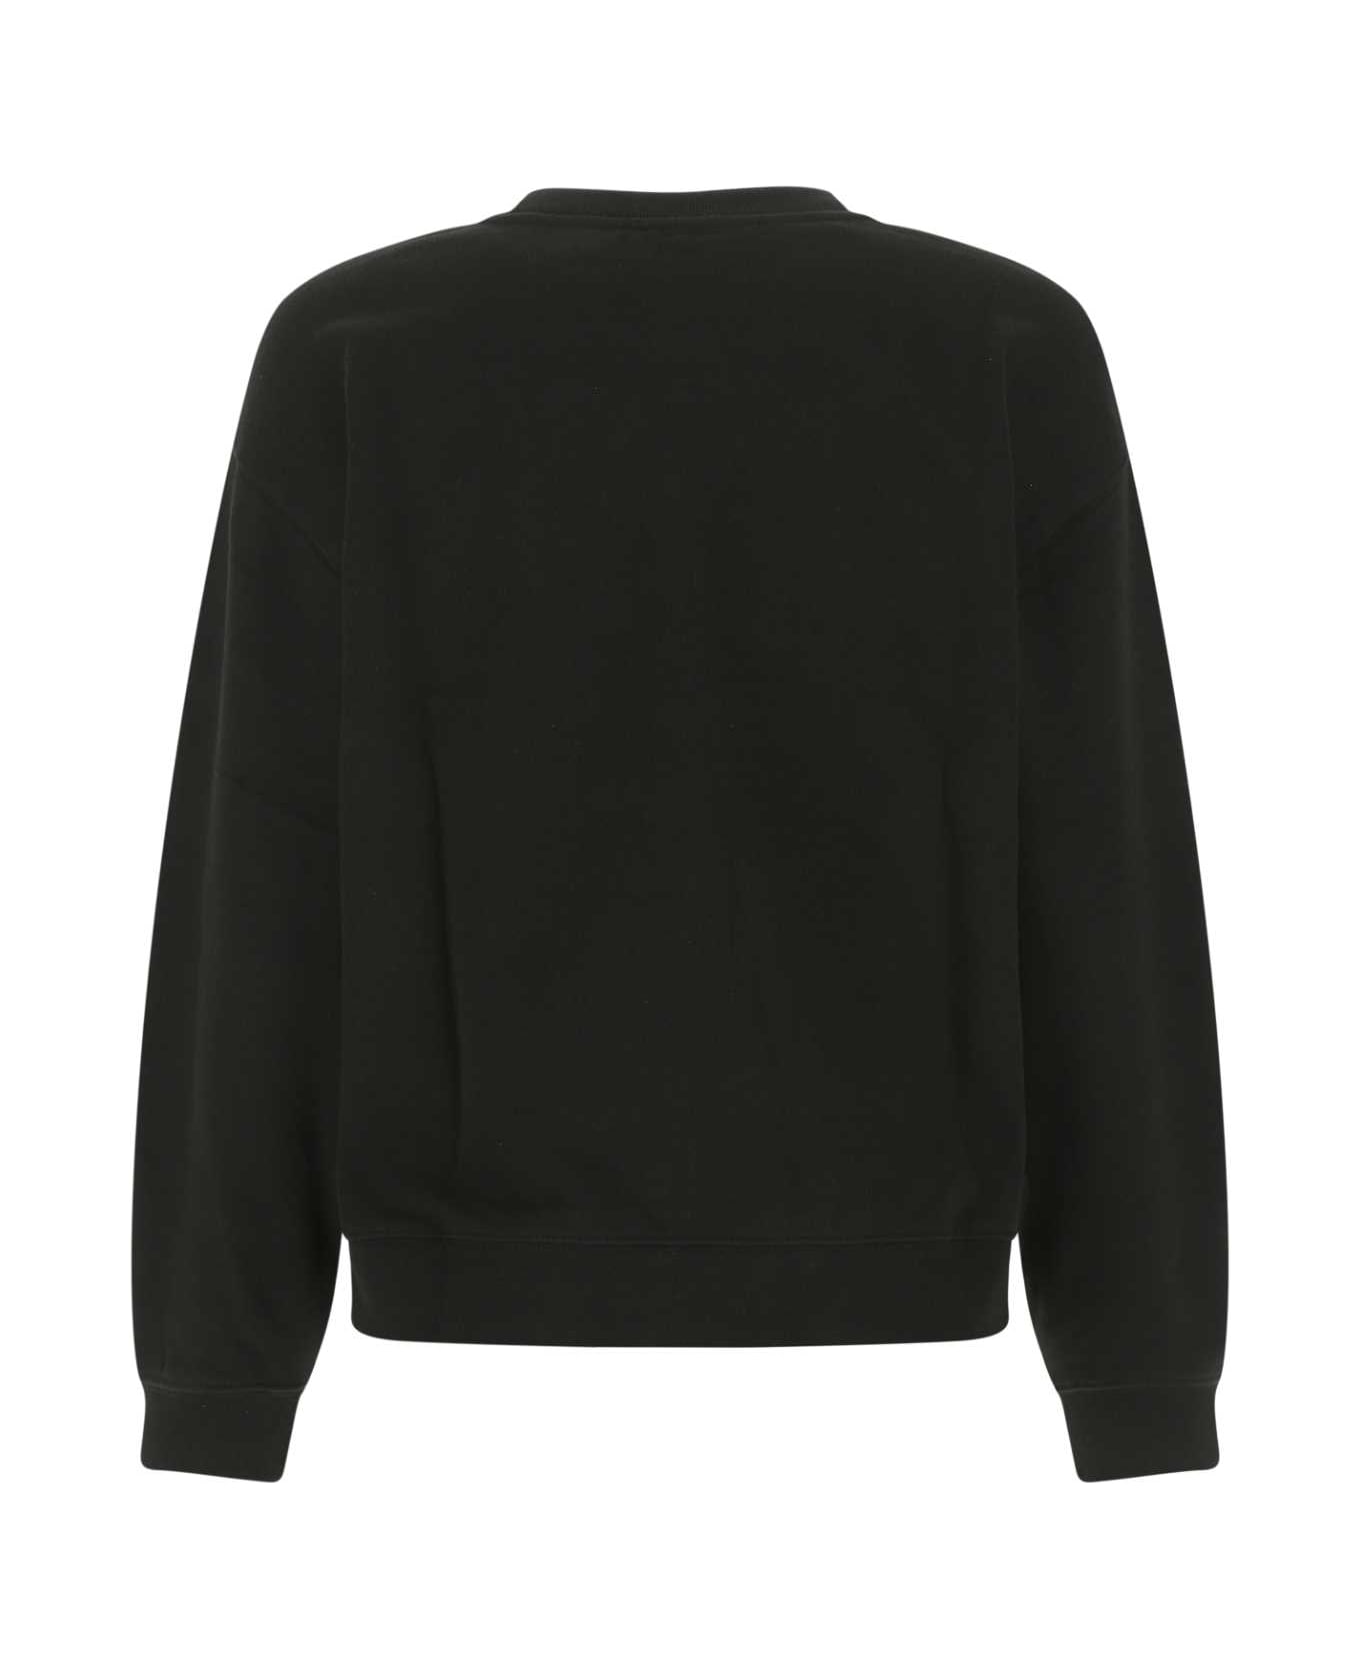 Kenzo Black Cotton Oversize Sweatshirt - 99J